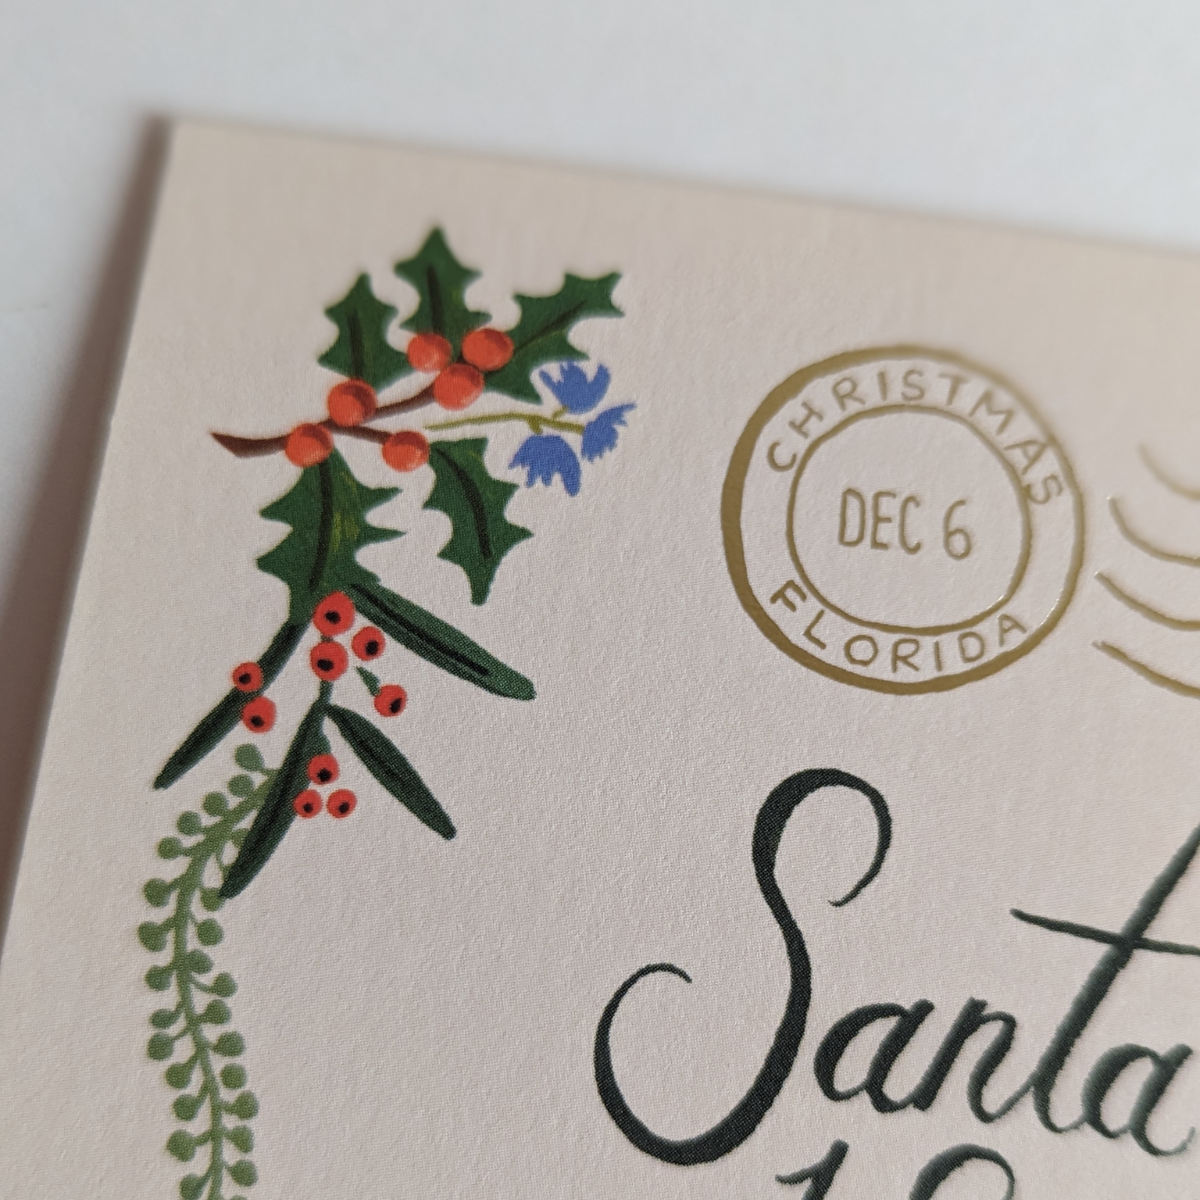 Cette très belle carte conçue comme une enveloppe adressée au Père Noël, ajoute une touche de fantaisie à vos vœux.